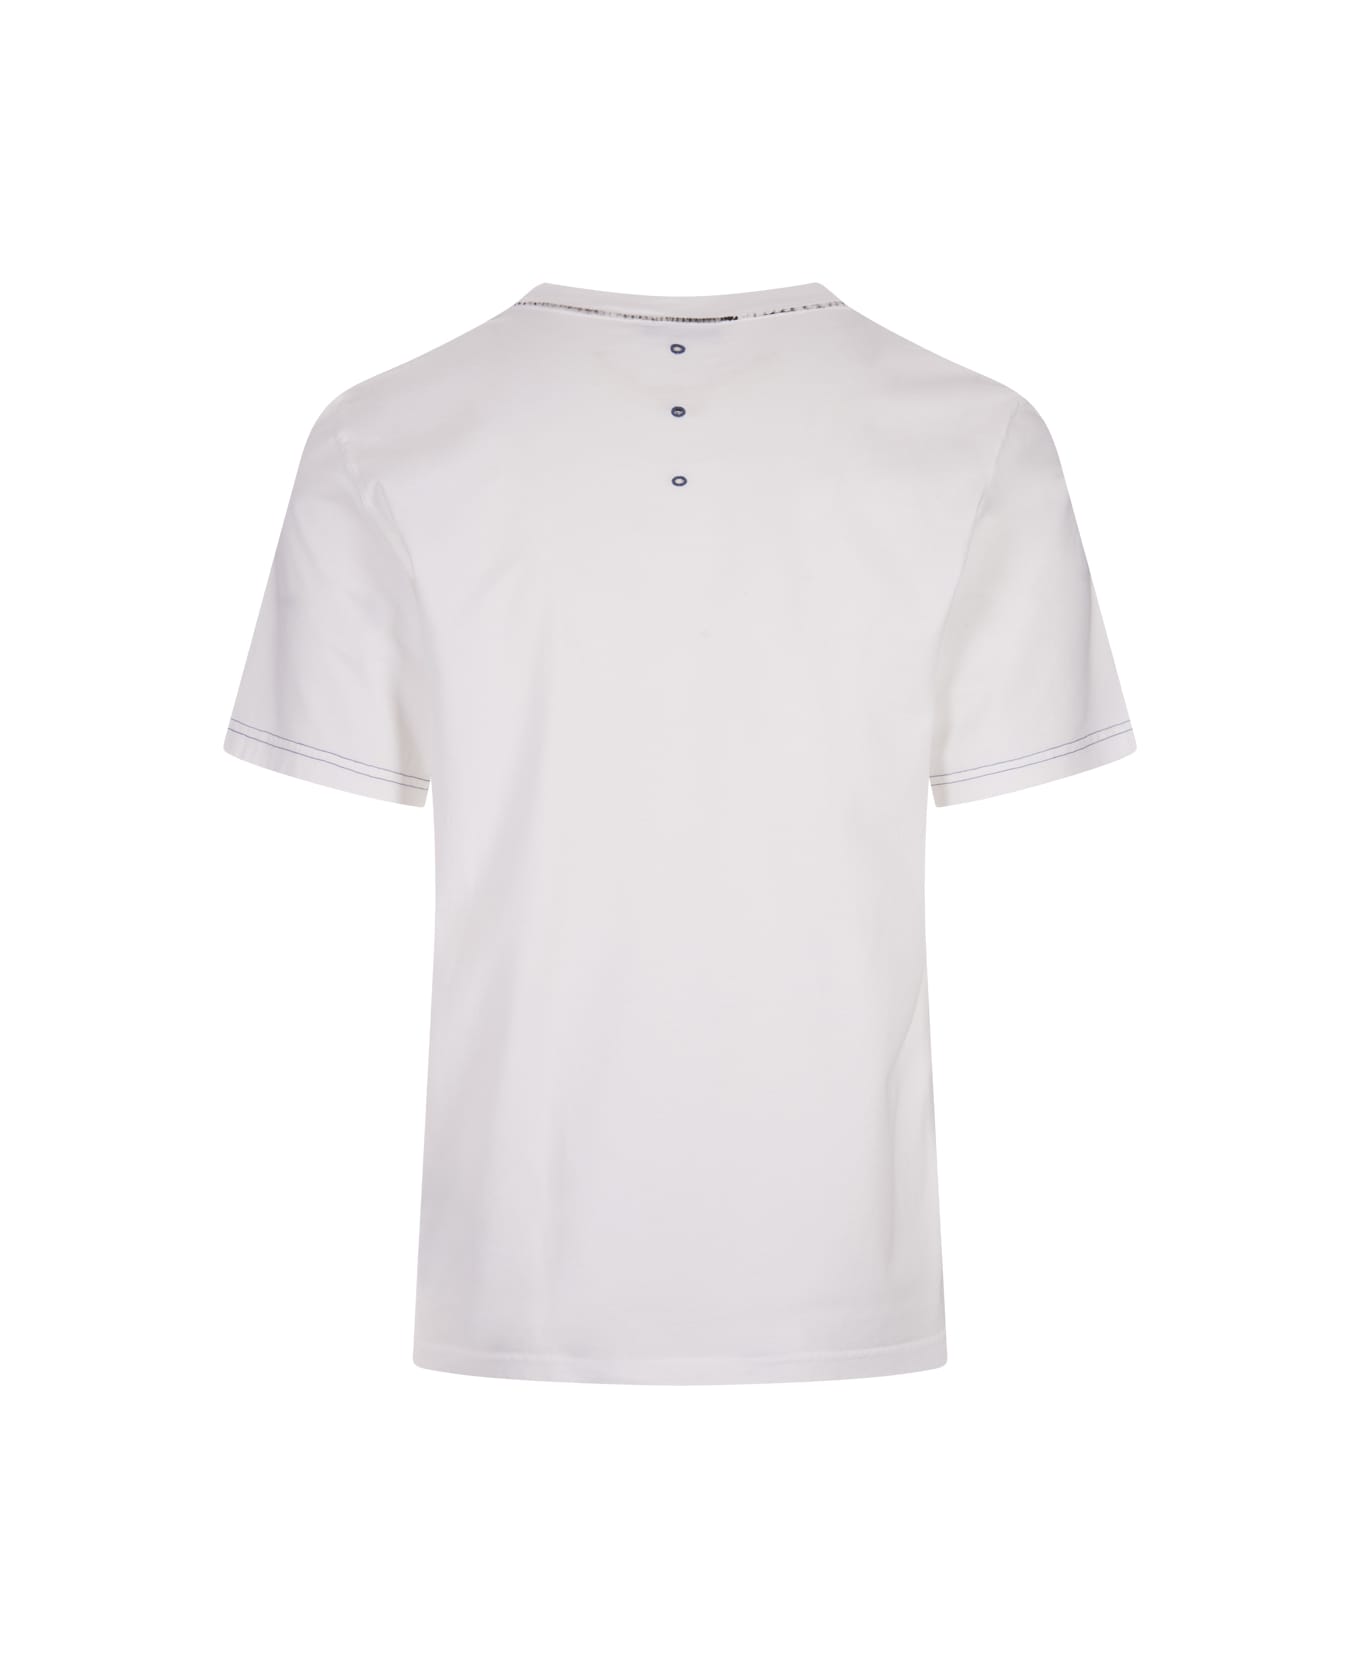 Premiata White T-shirt With Never White Print - White